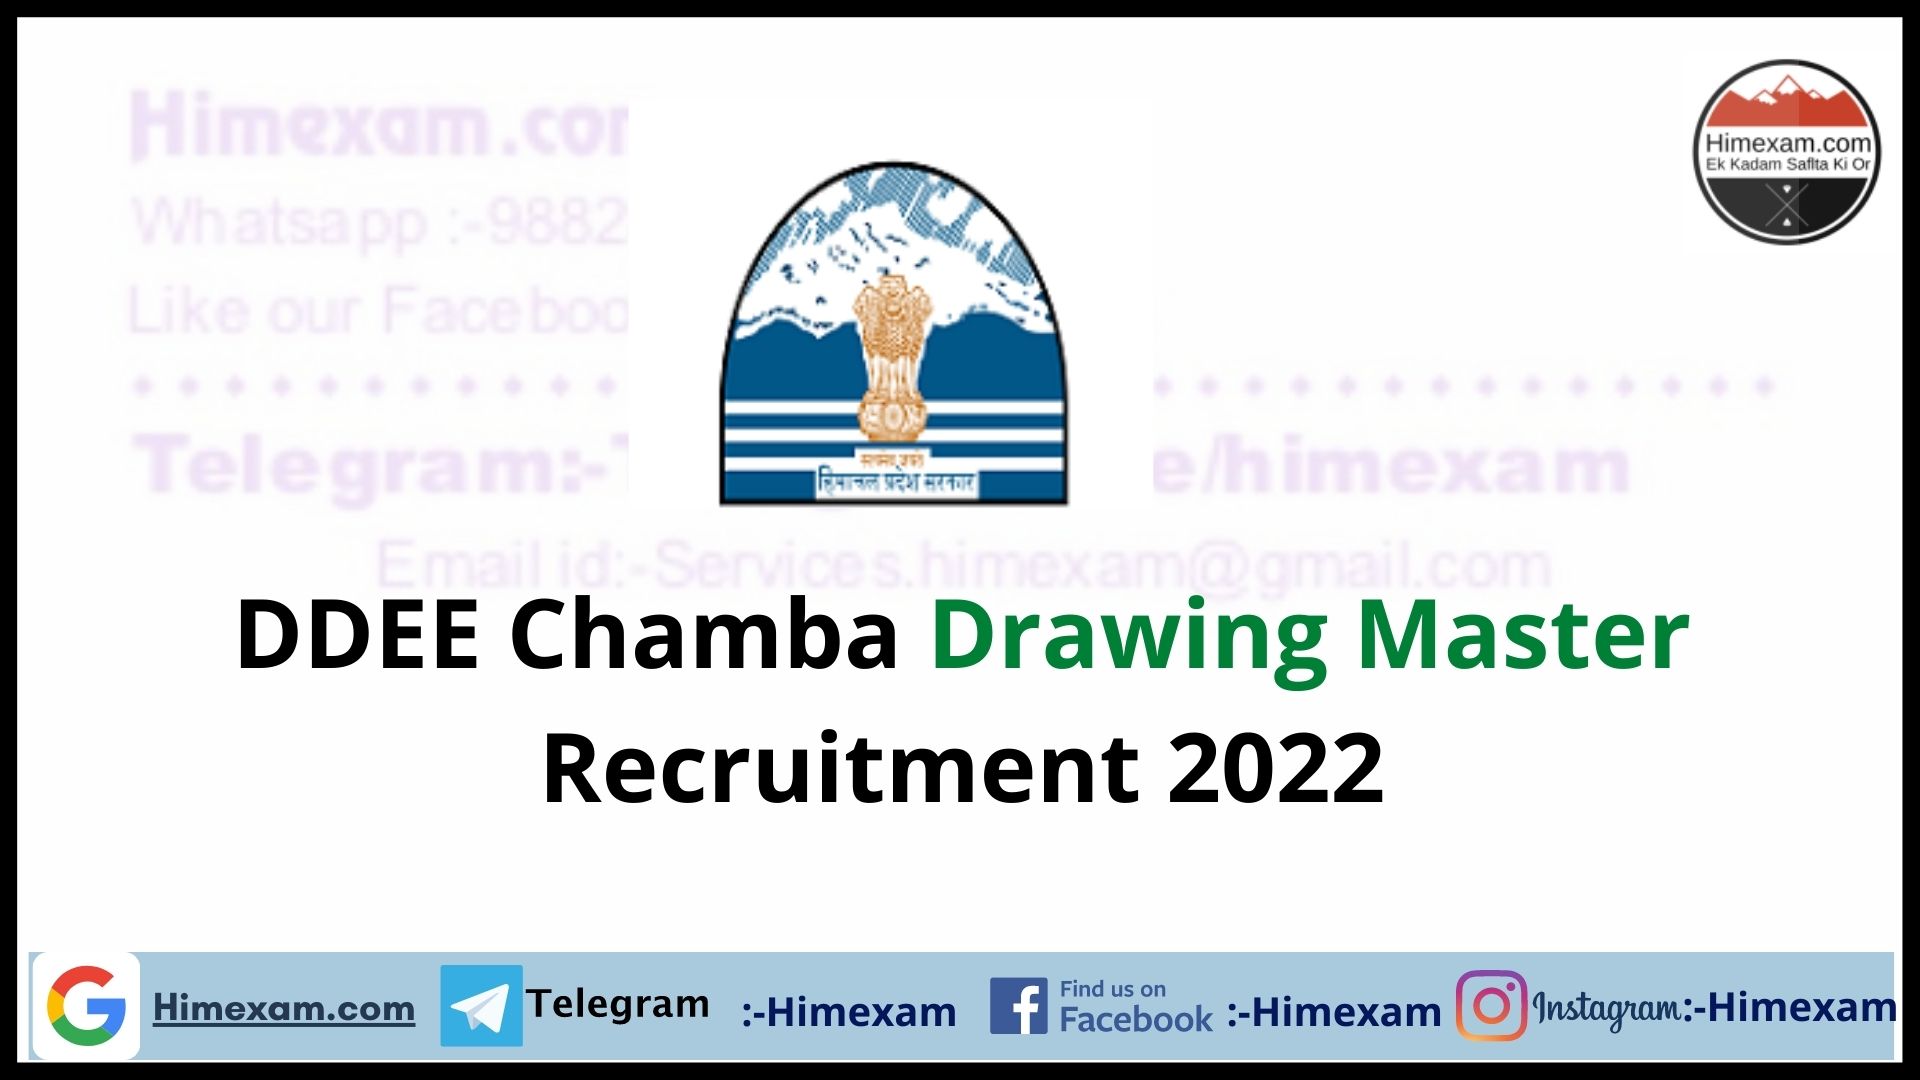 DDEE Chamba Drawing Master Recruitment 2022